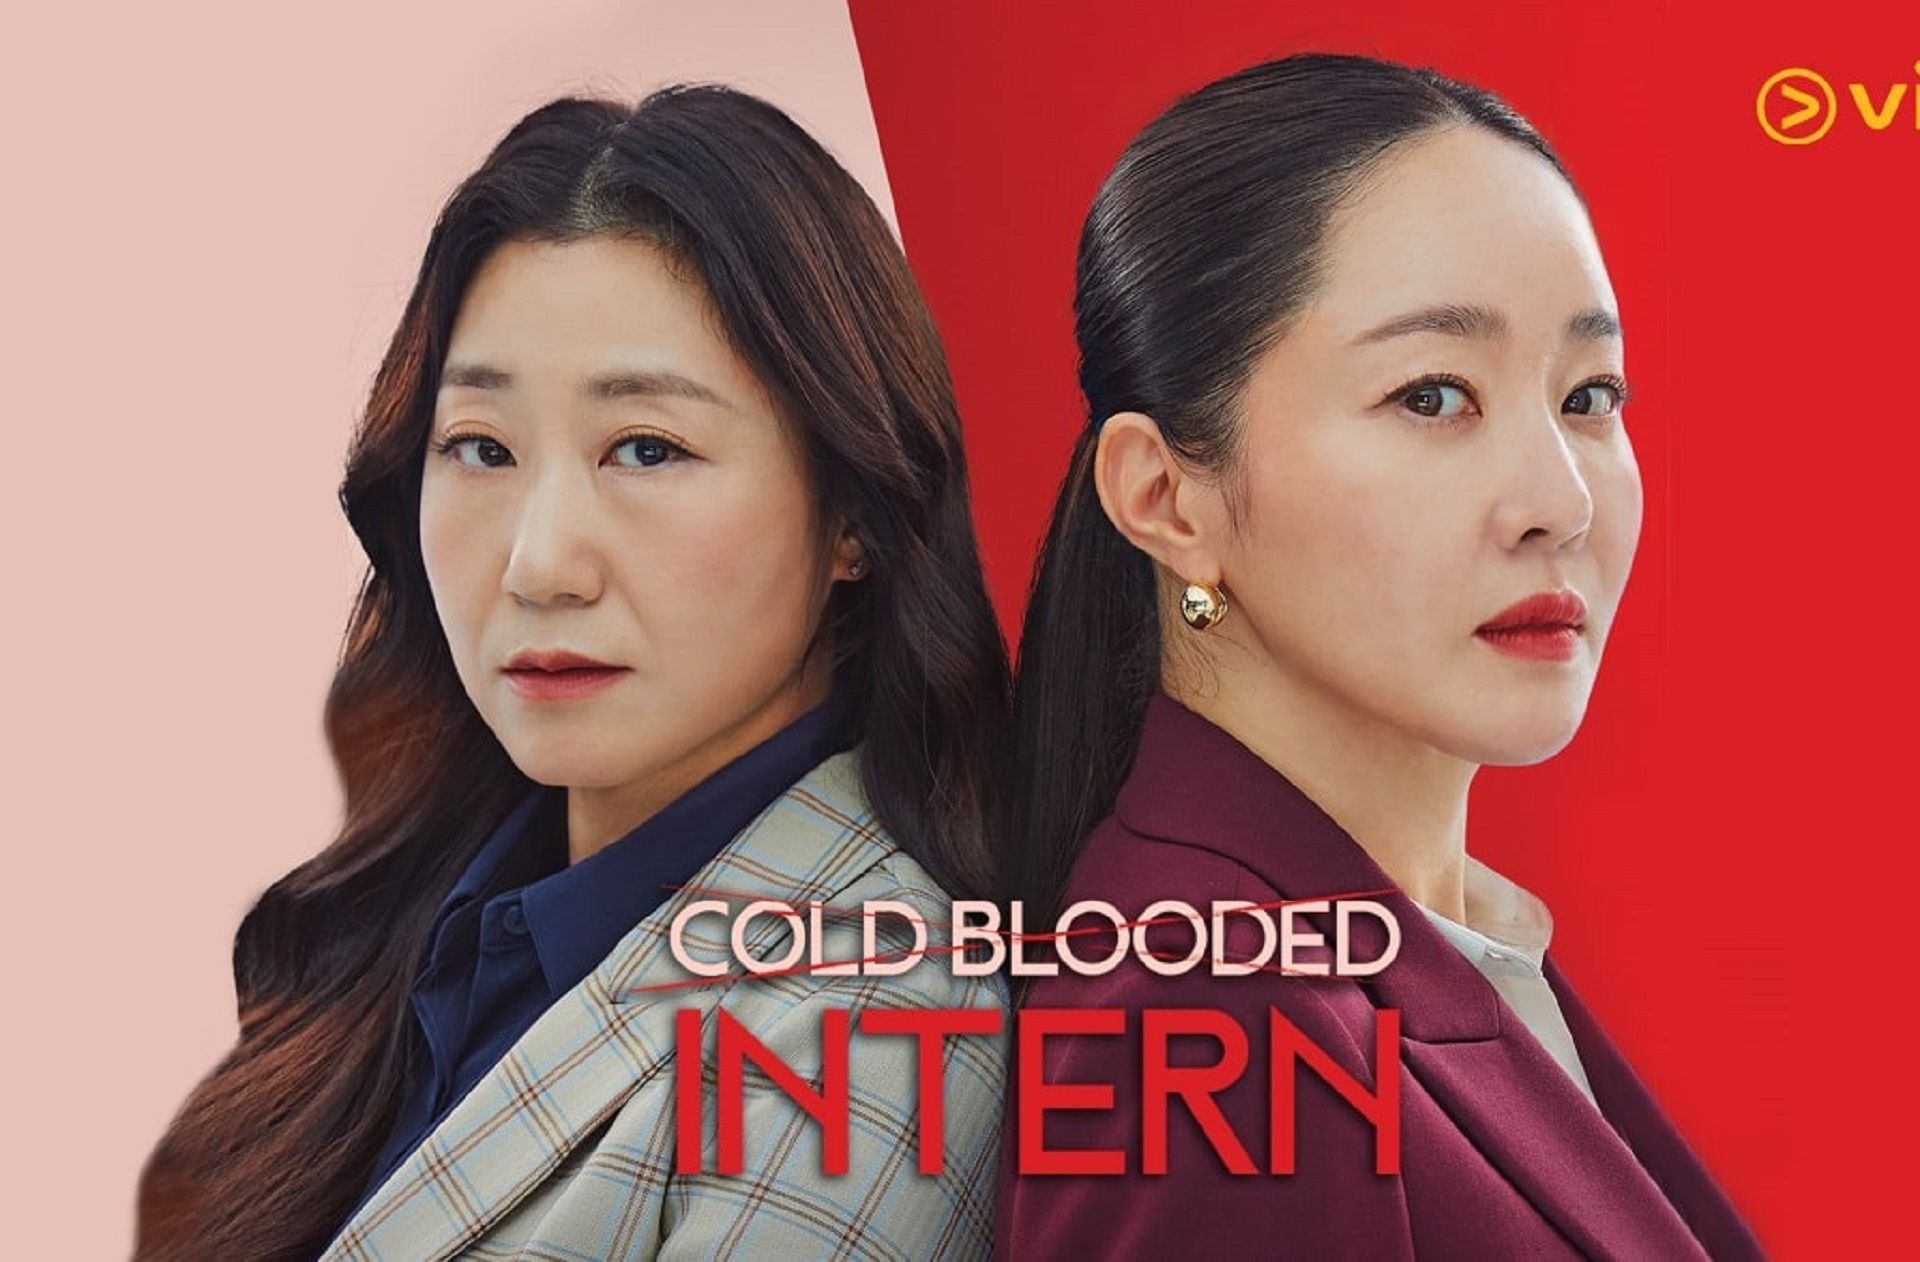 Cold Blooded Intern jadi salah satu rekomendasi drama yang trending di Viu.